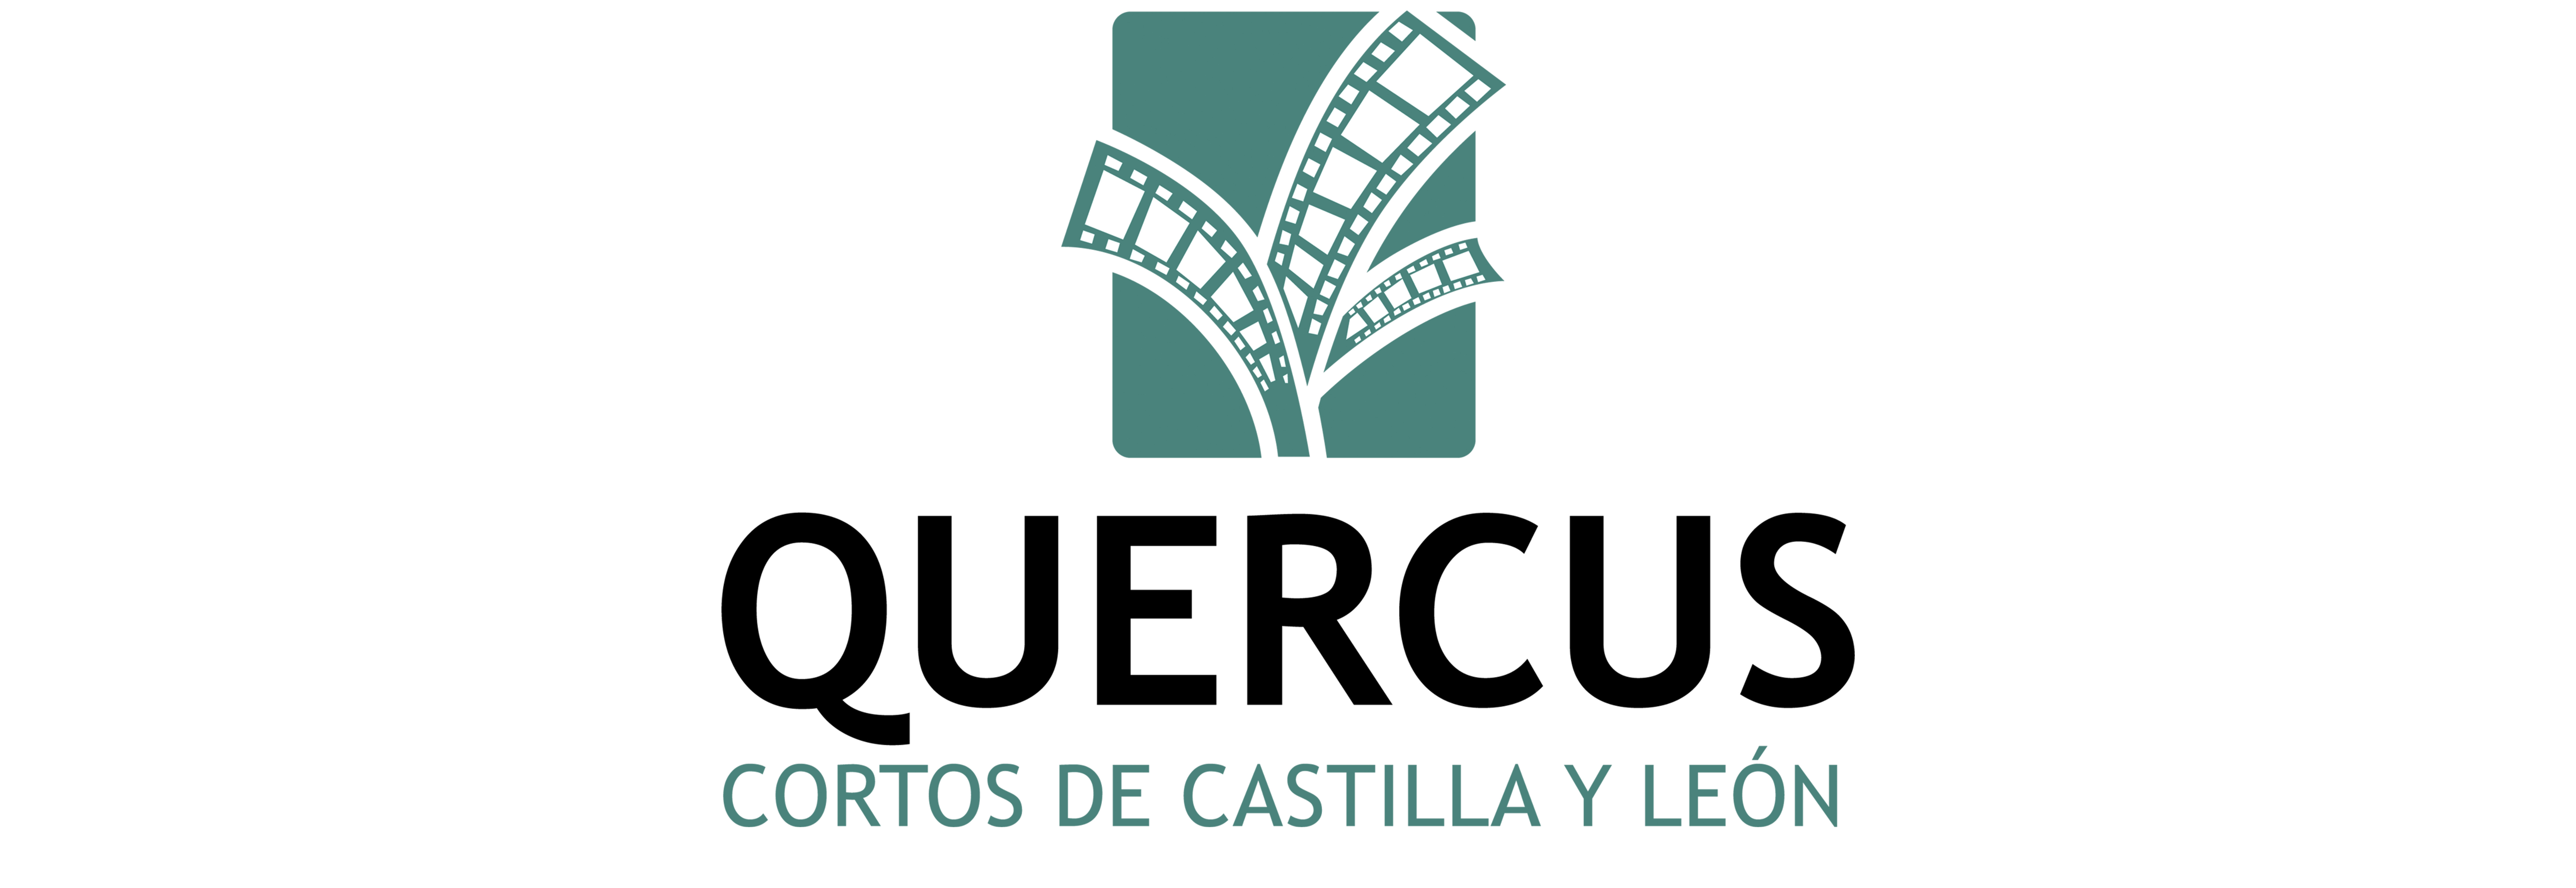 El catálogo de Quercus se proyecta hoy en Salamanca